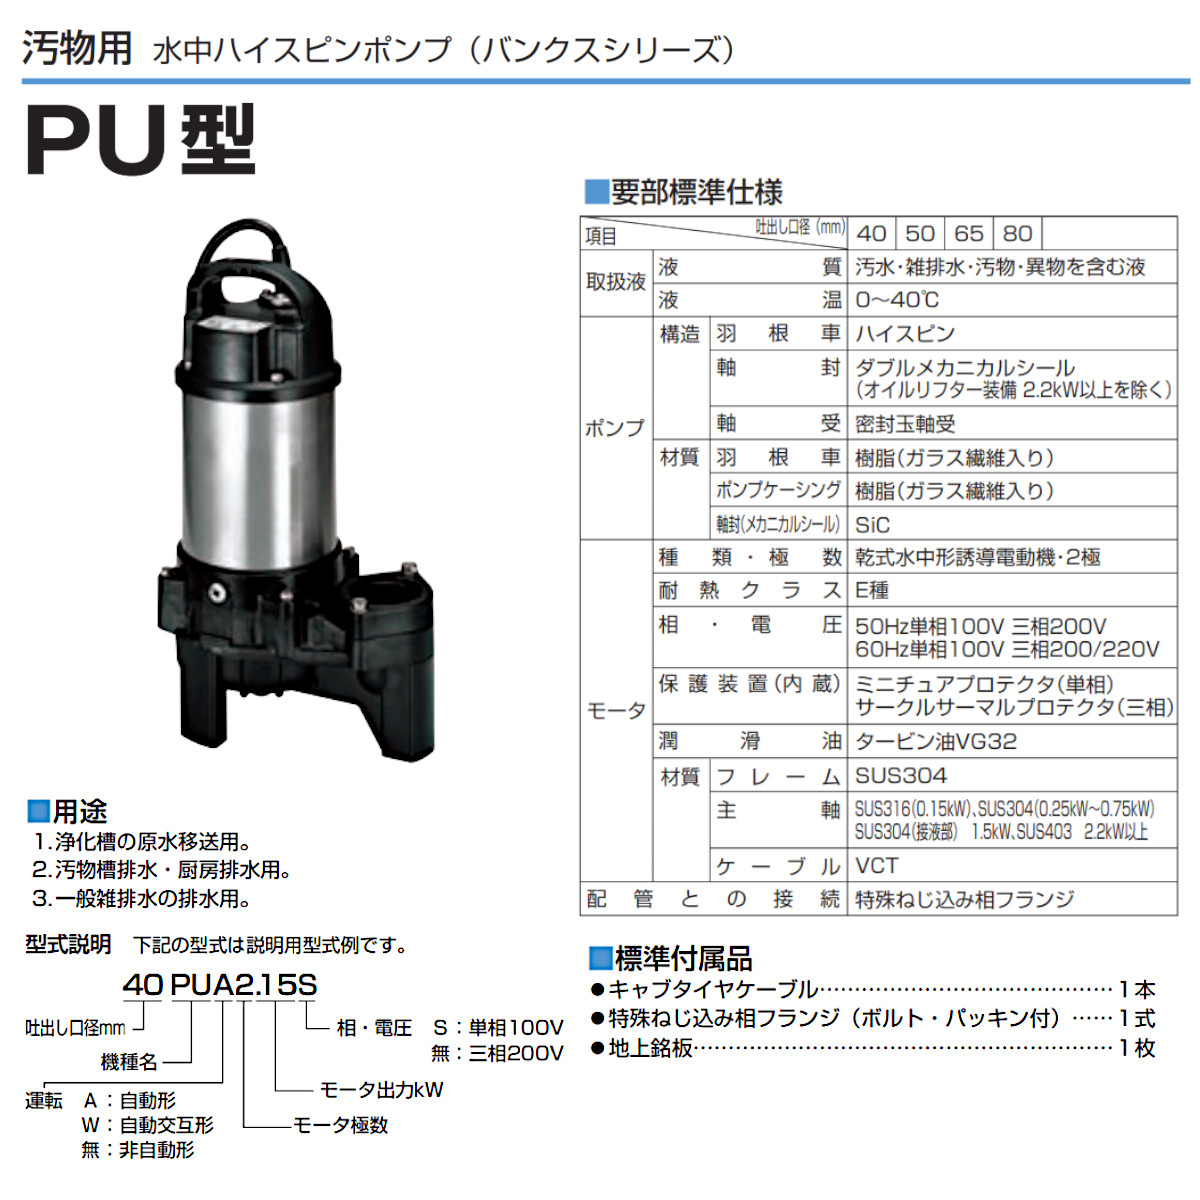 ツルミ 汚物用 水中ポンプ 50PU2.4S / 50PU2.4 バンクスシリーズ